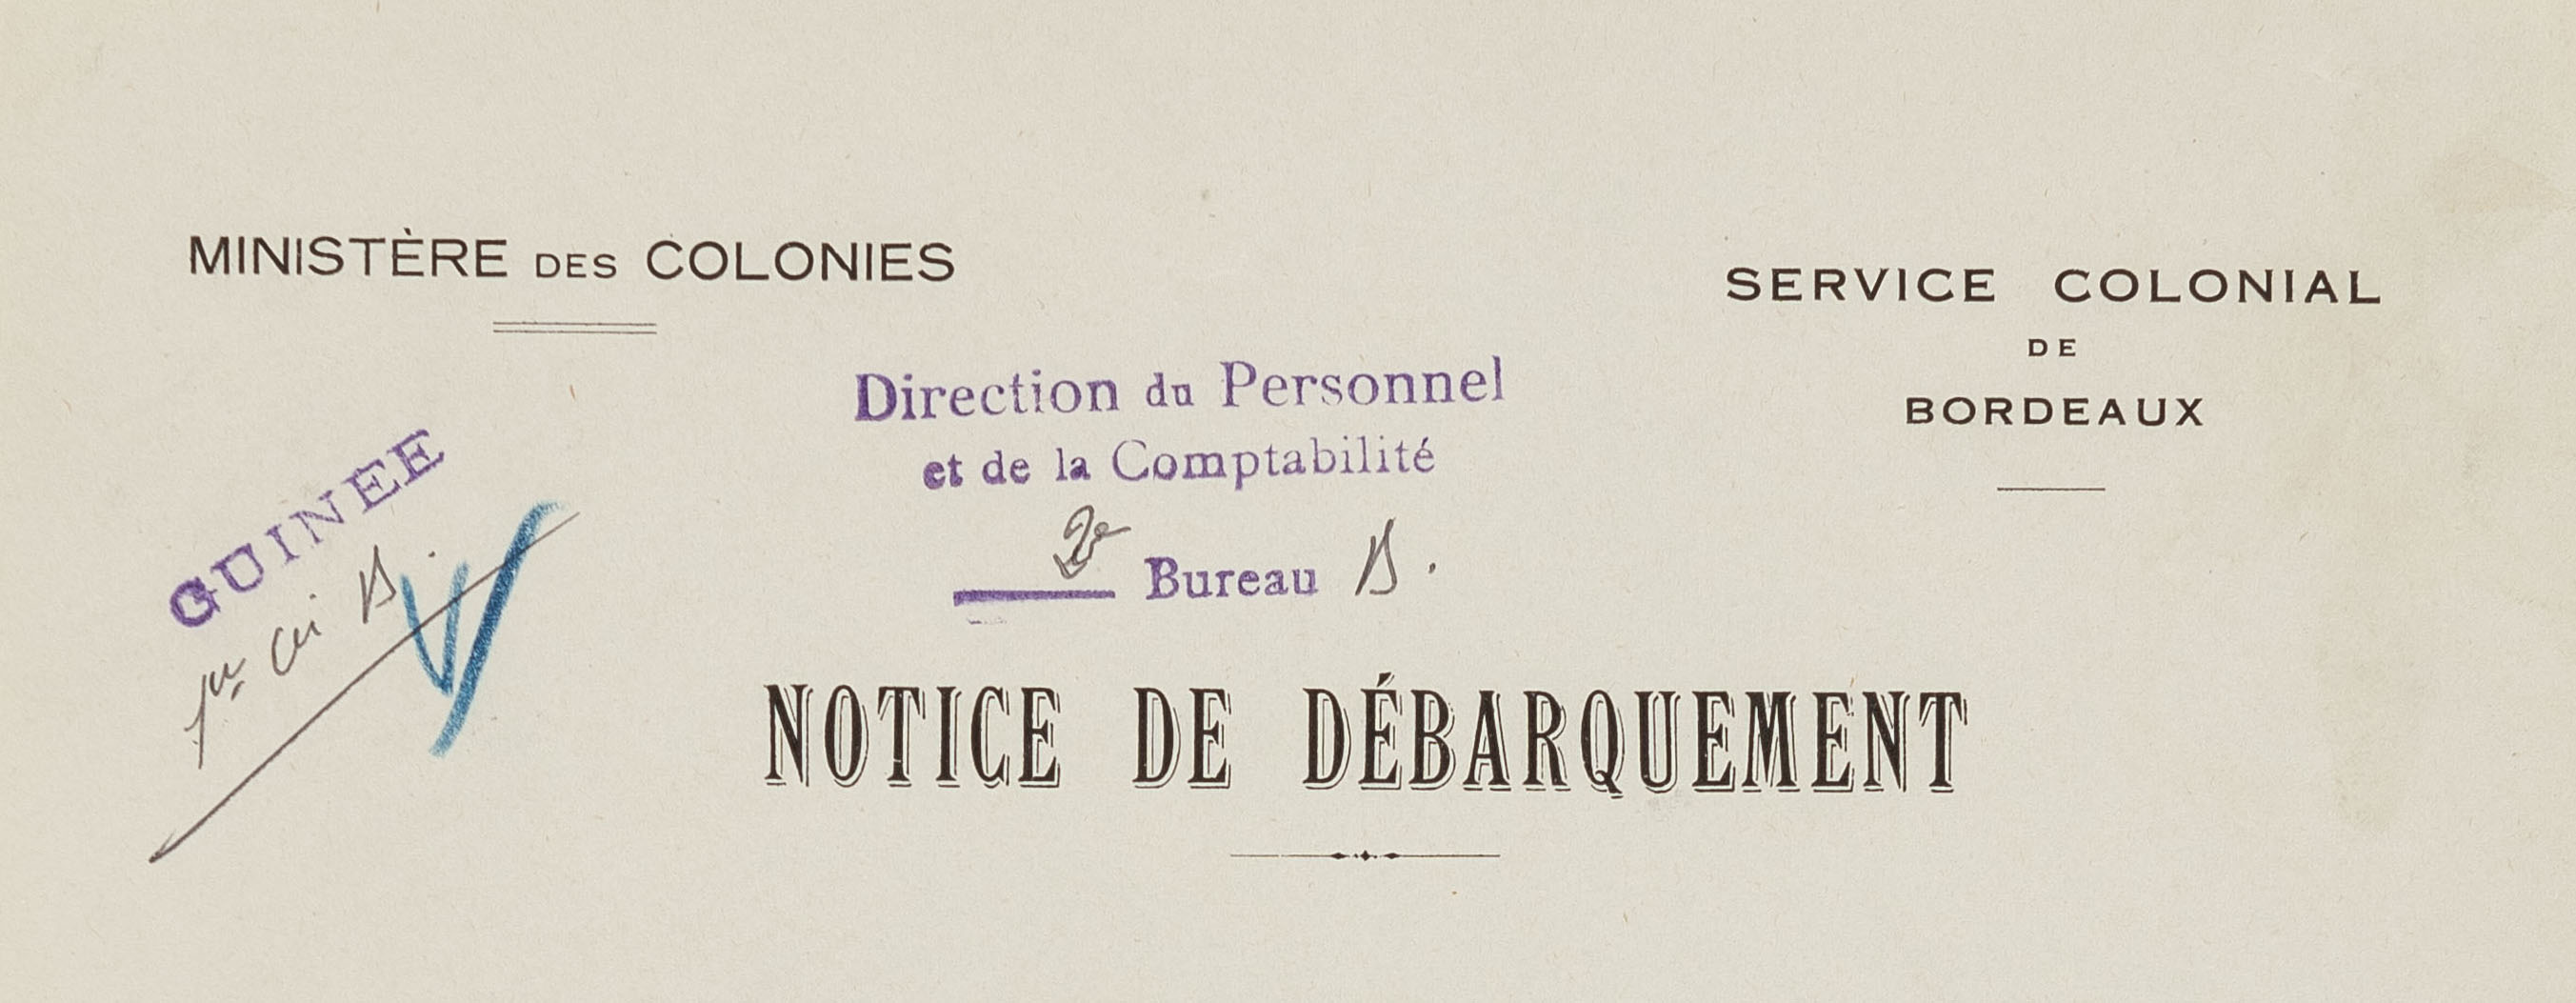 Exemples de notice et bulletins conservés dans le dossier personnel de DIETLIN René, administrateur adjoint des colonies